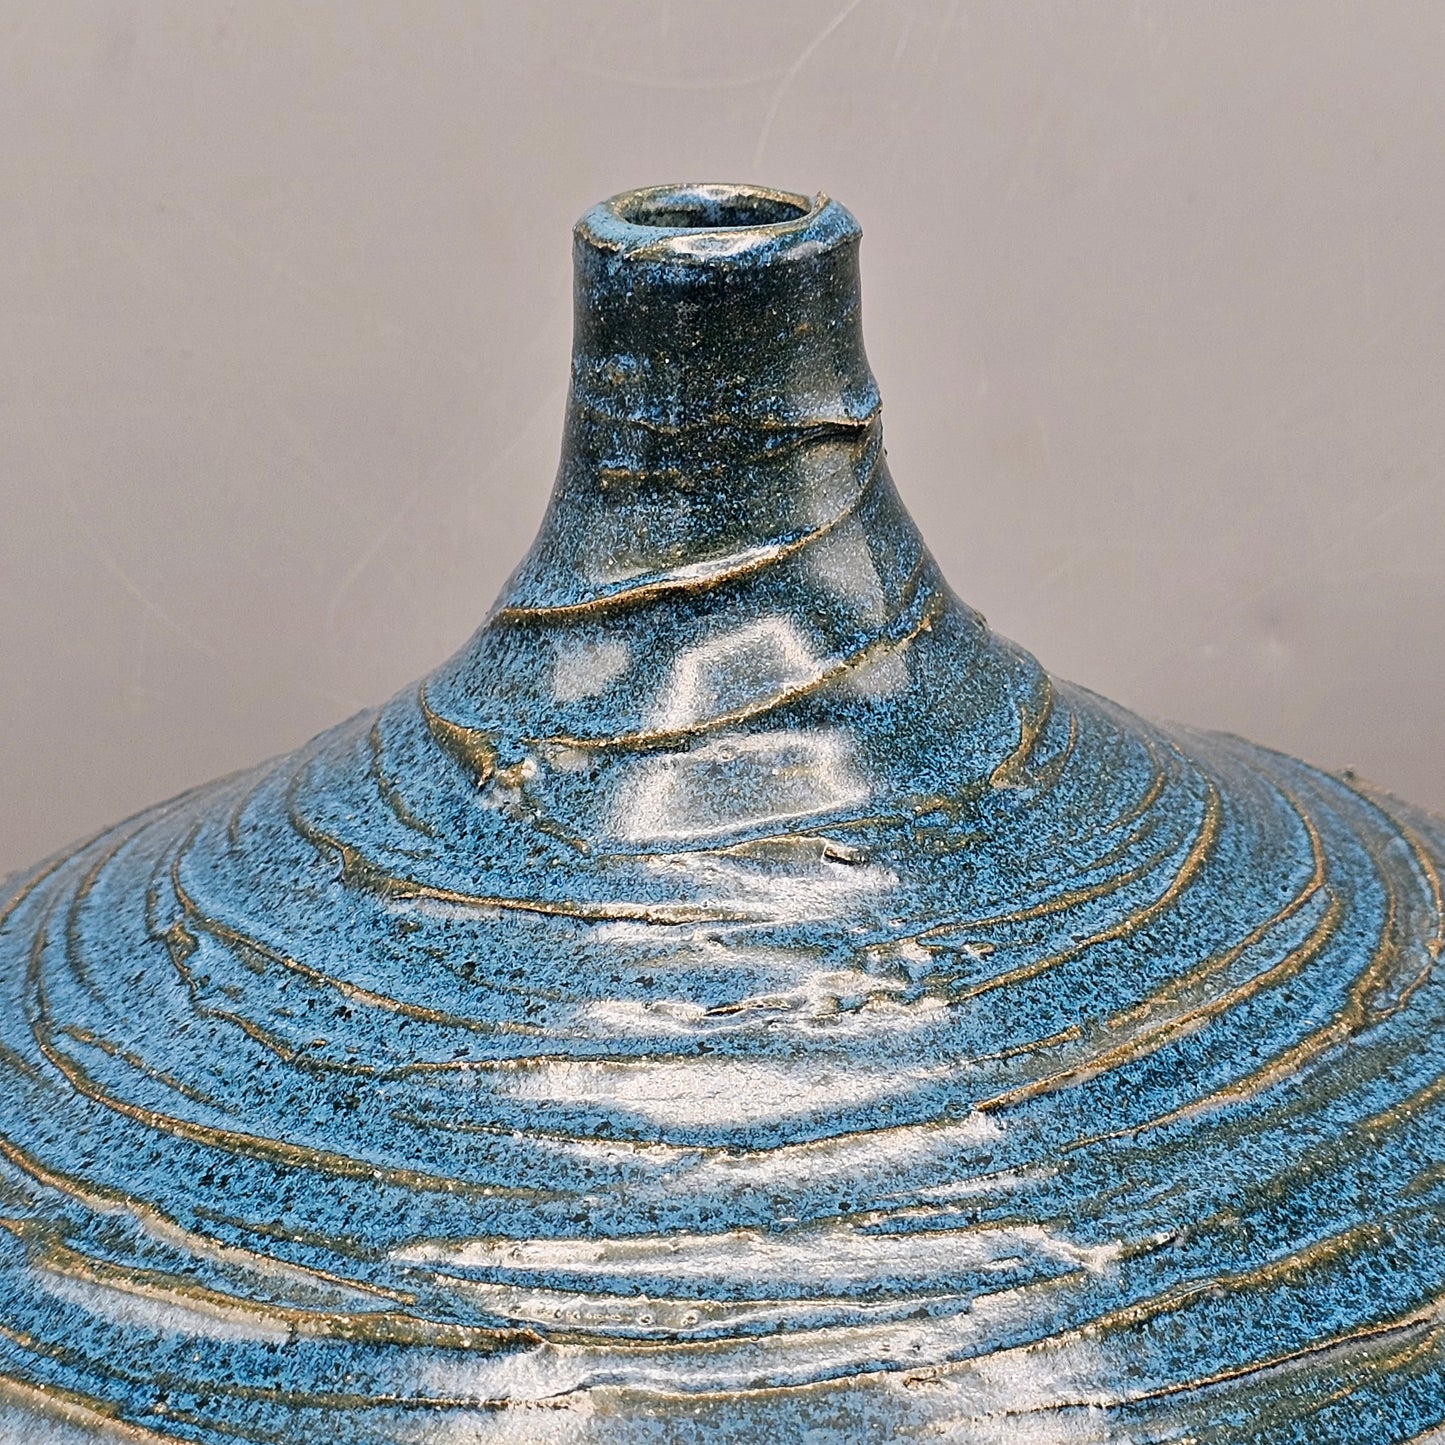 Large Studio Pottery Blue Vessel - Aldo Londi Style